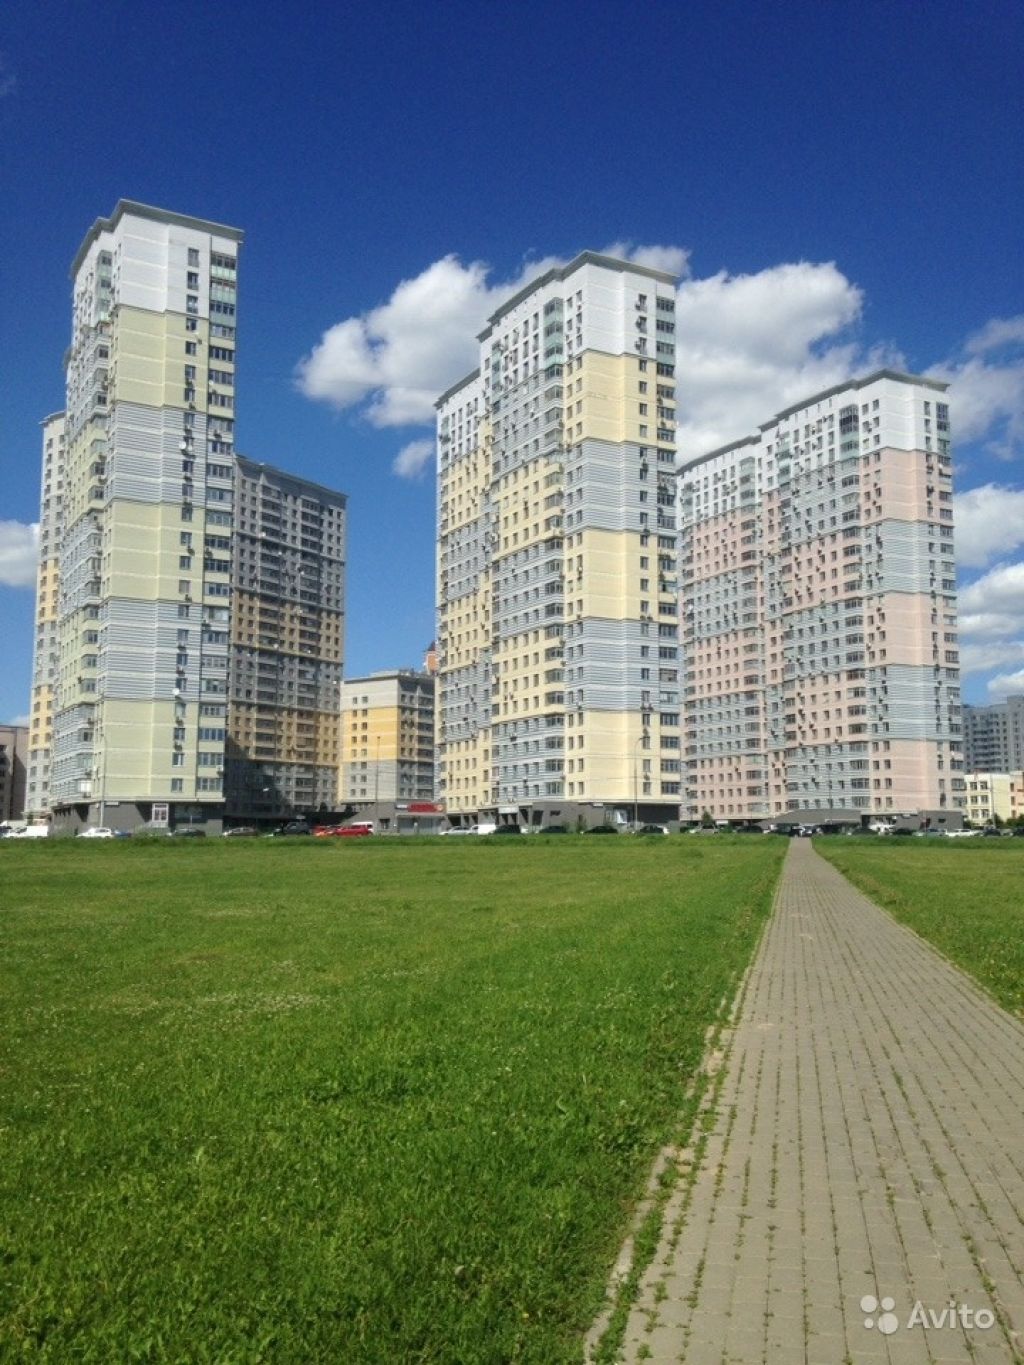 Продам квартиру 1-к квартира 40 м² на 5 этаже 24-этажного монолитного дома в Москве. Фото 1